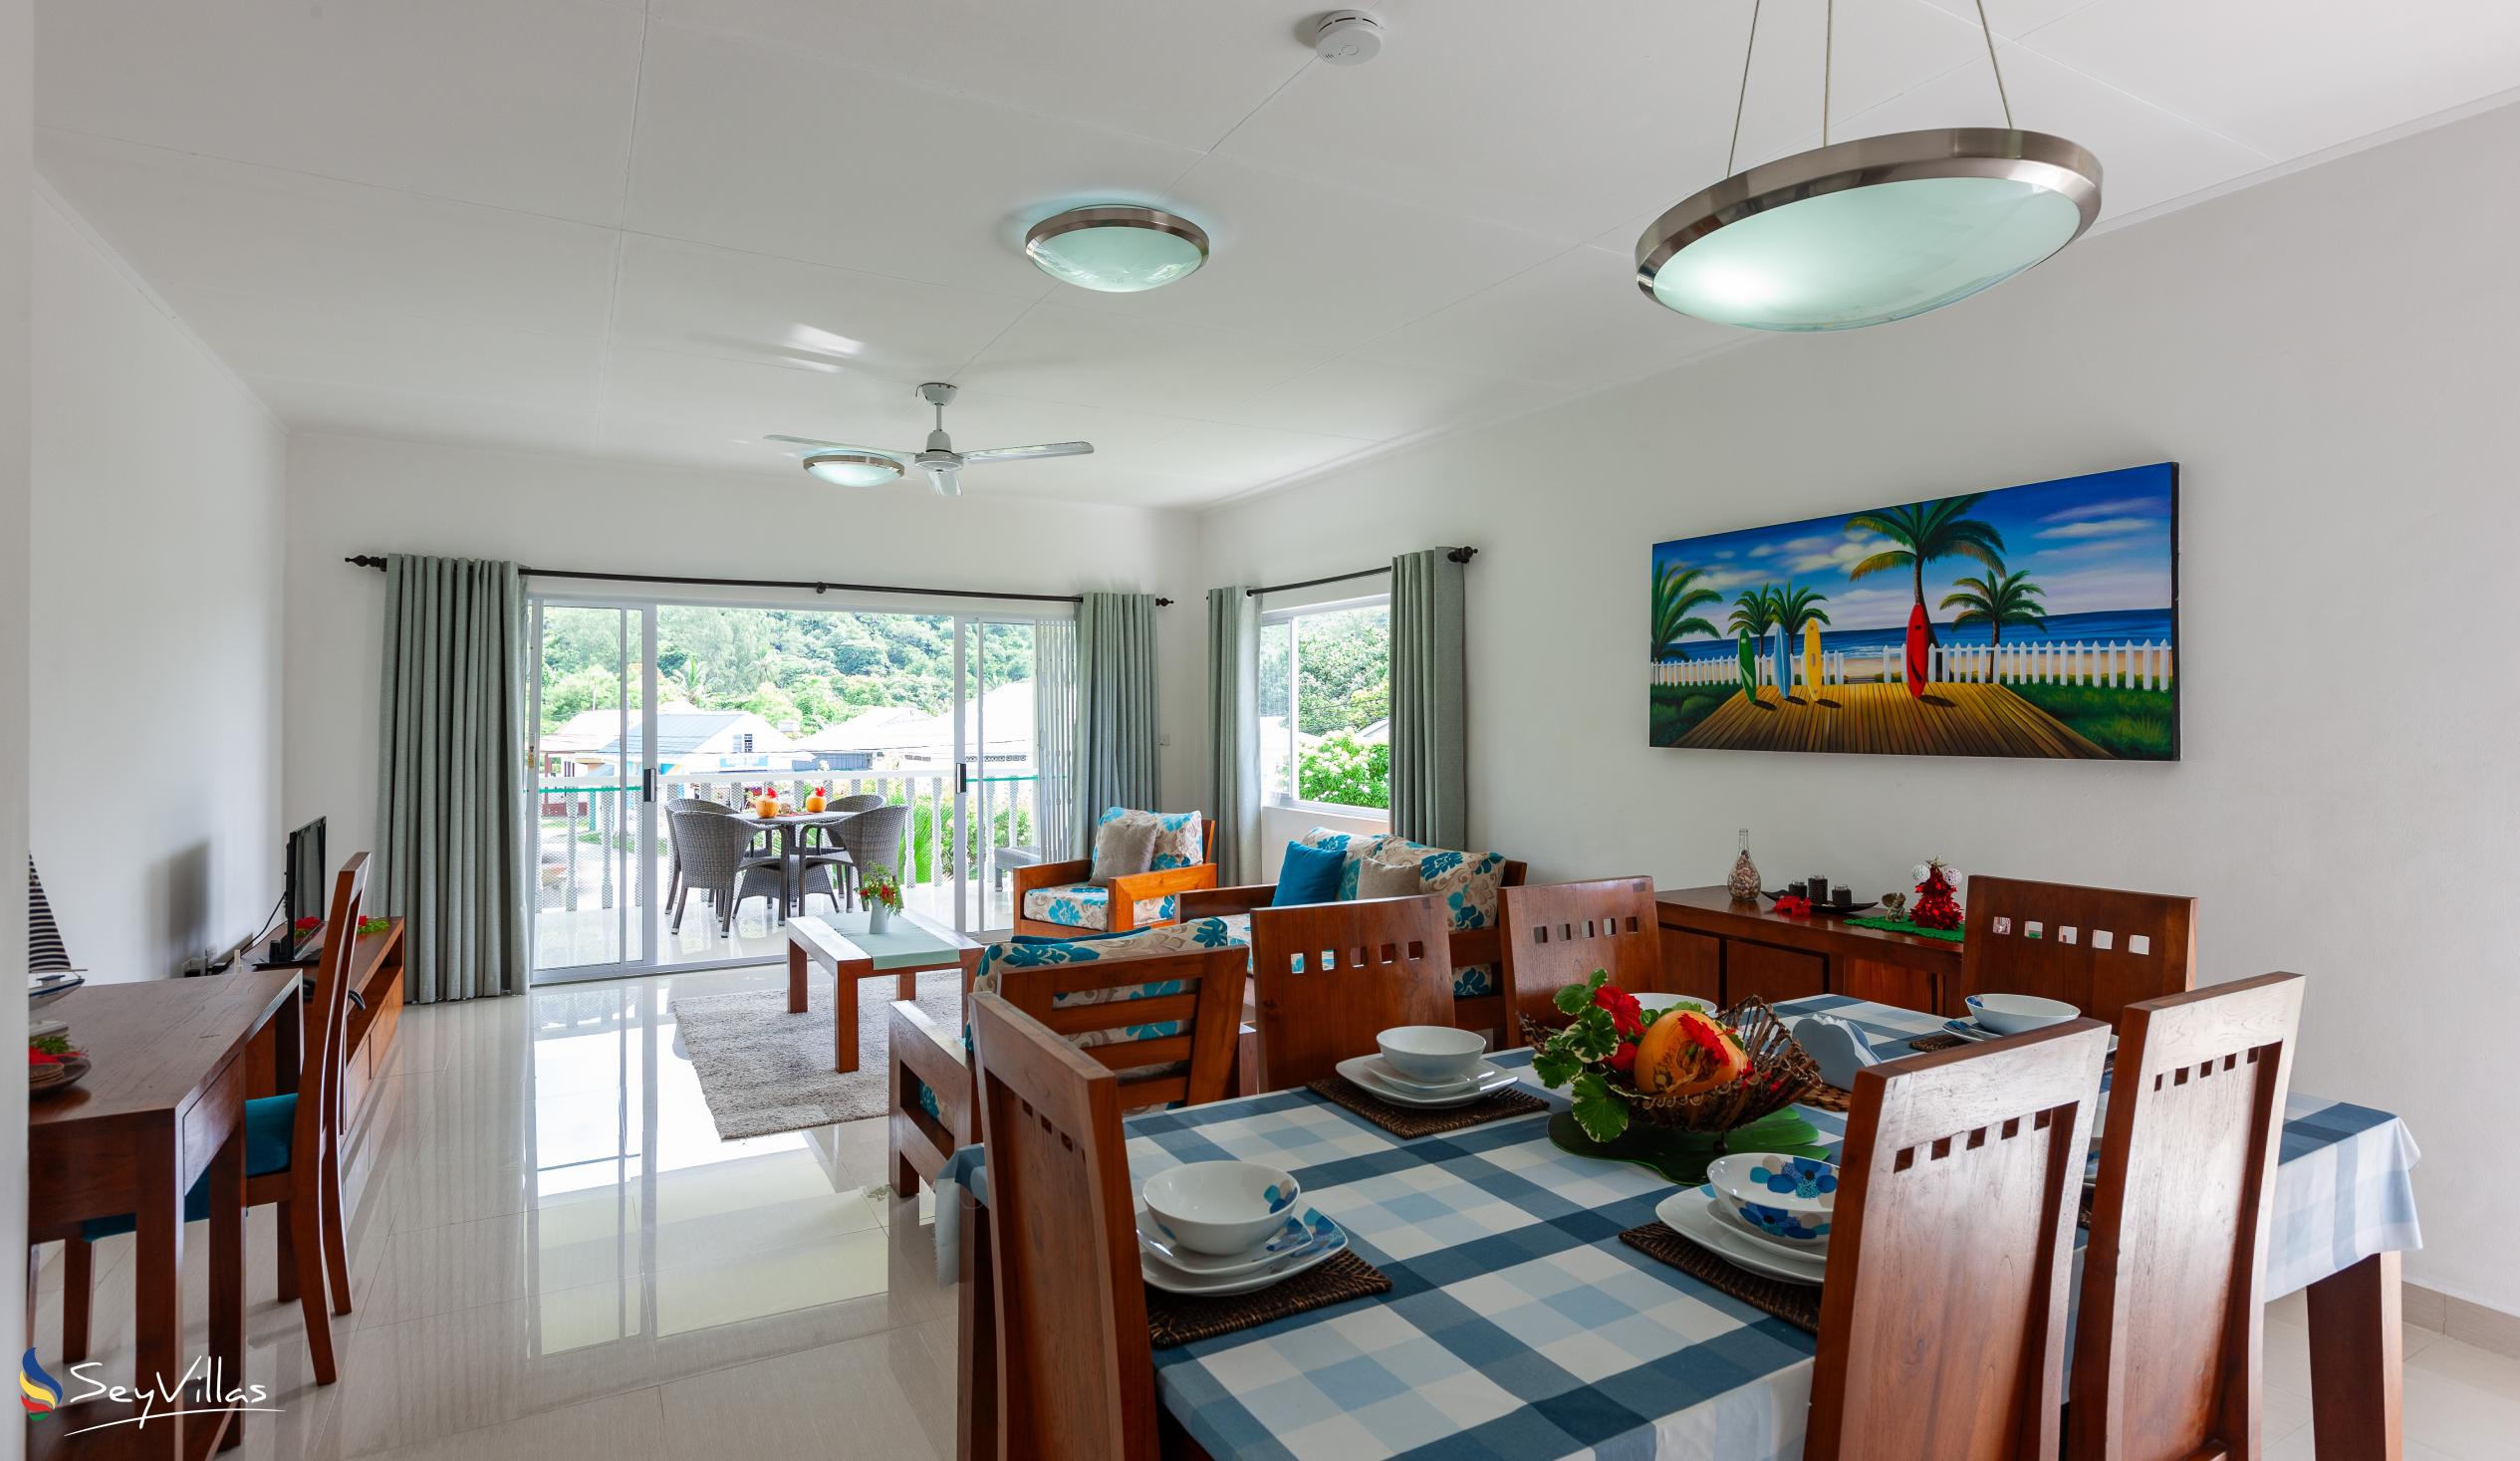 Foto 21: Casa Tara Villas - Appartamento con 2 camere - Praslin (Seychelles)